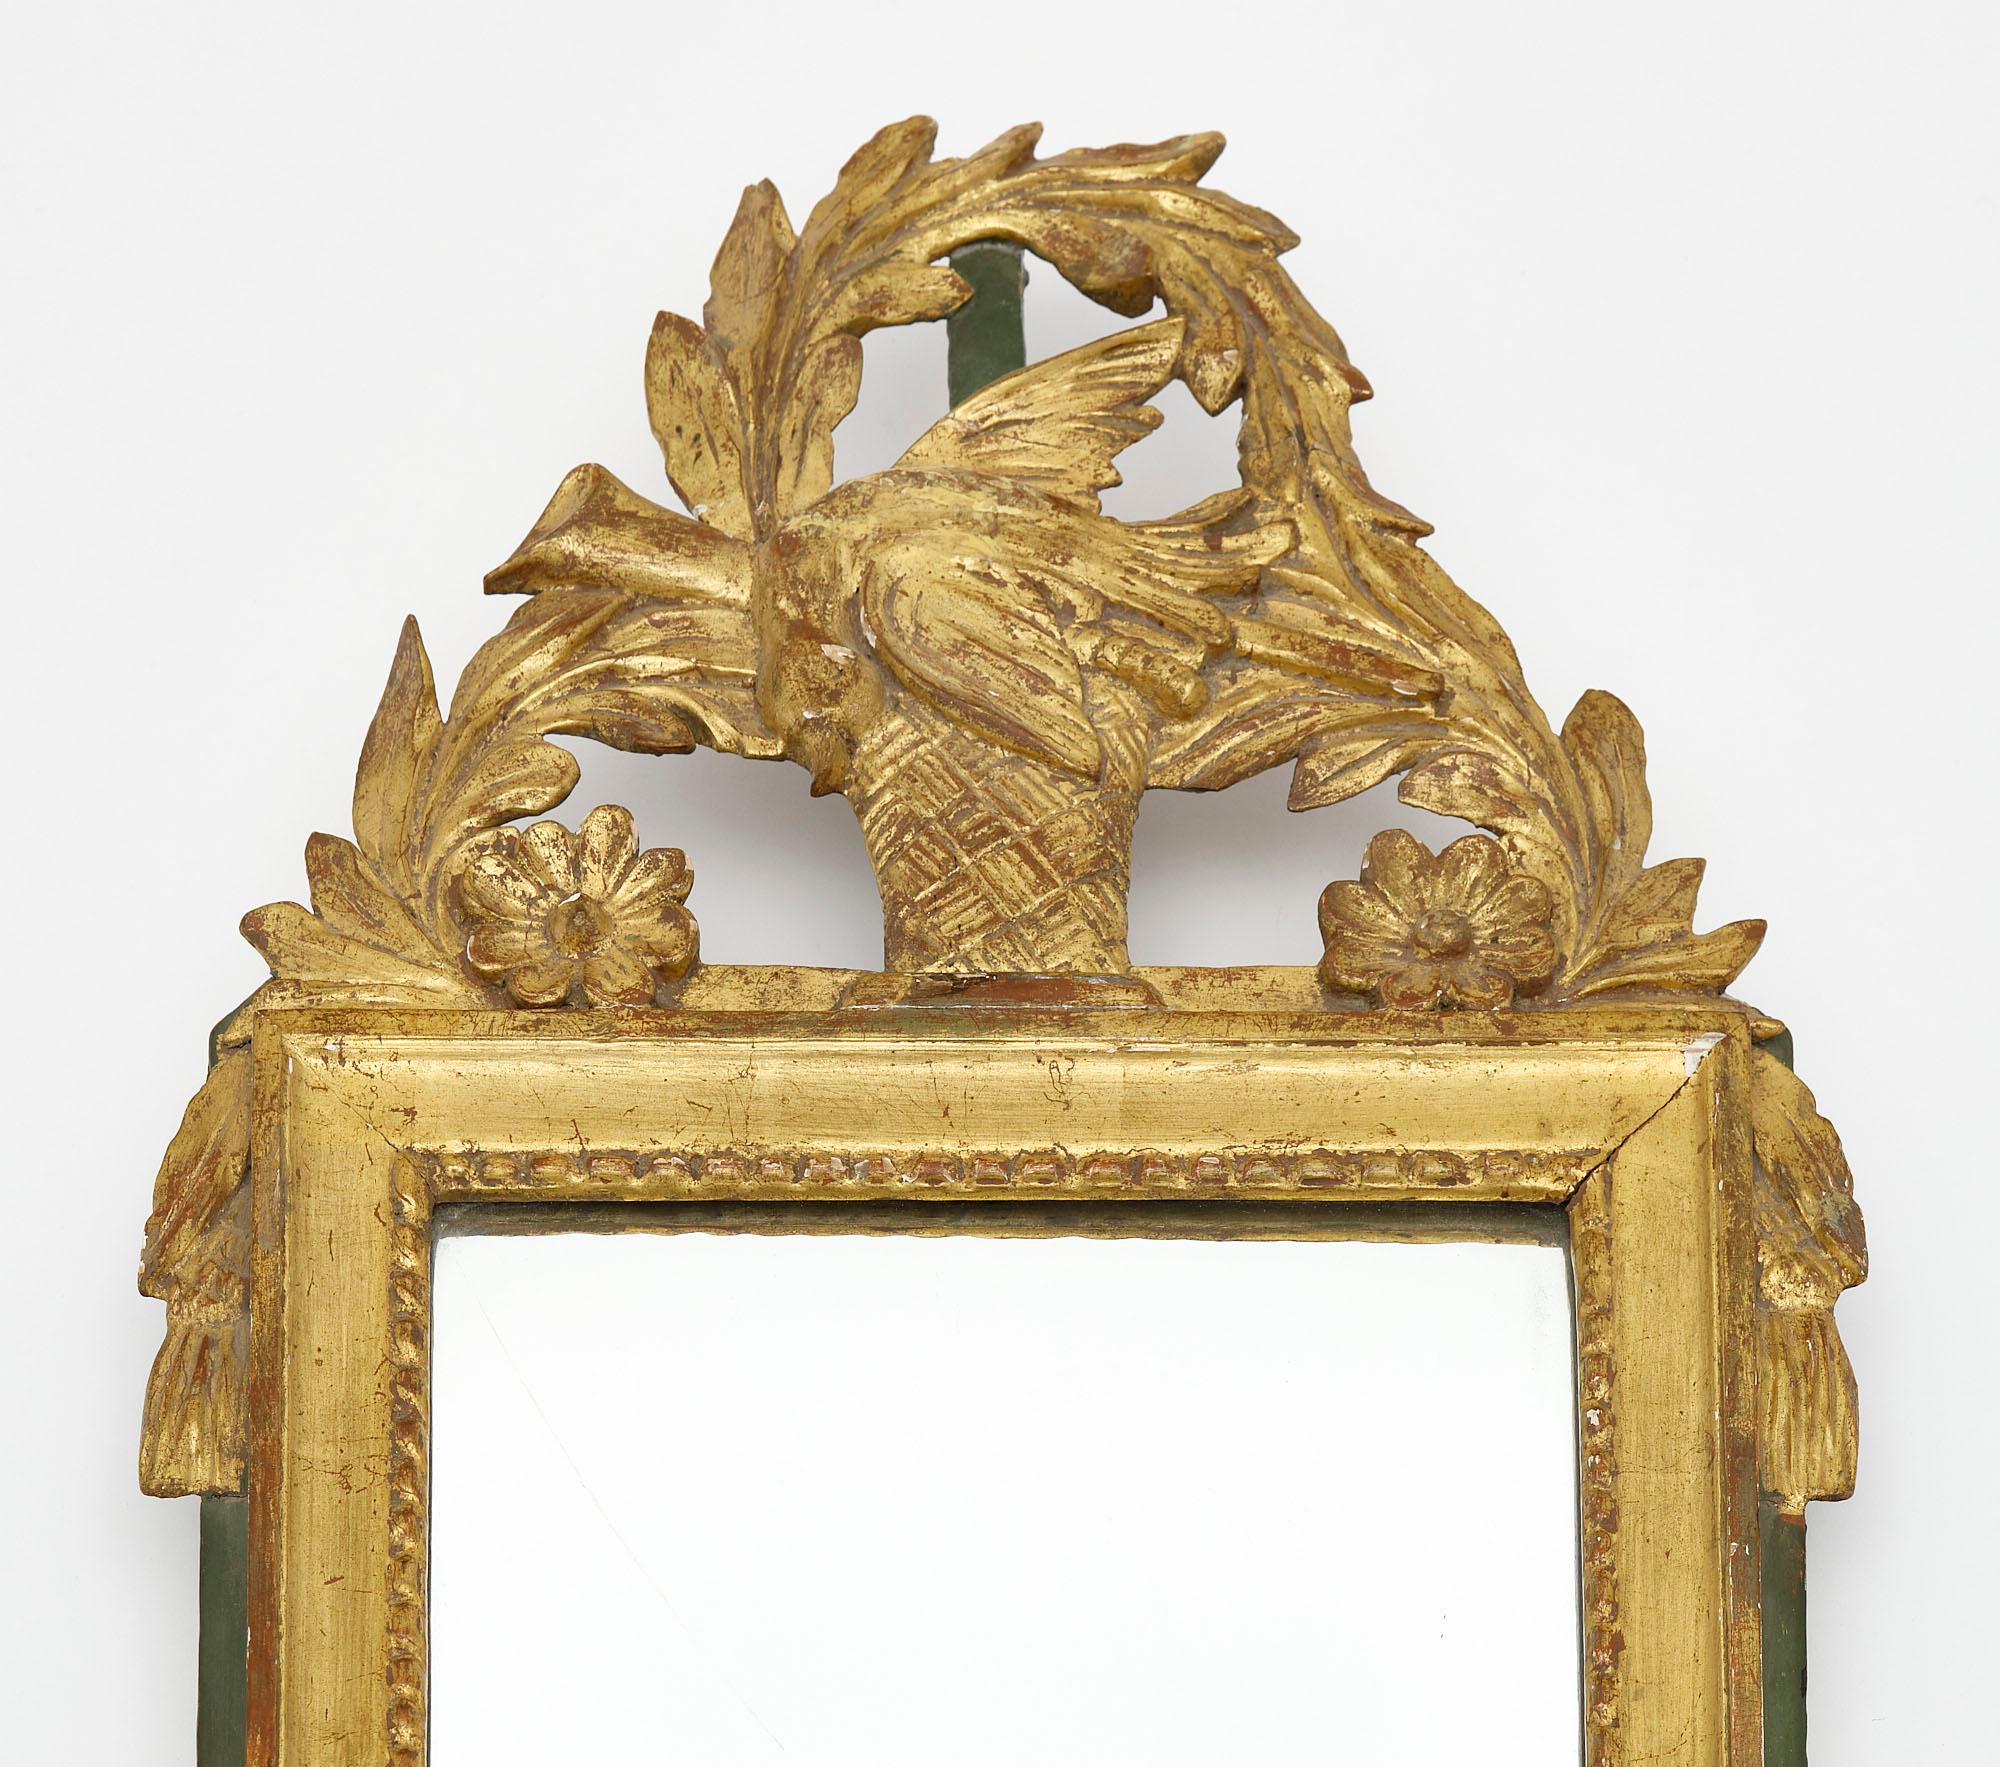 Spiegel aus Frankreich aus der Zeit Ludwigs XVI. Dieses Stück ist aus handgeschnitztem Holz mit Stuck und einer Fassade mit Vogel, Blumenmotiven und Lorbeerkranz gefertigt. Die 24-karätige Blattvergoldung ist original, ebenso wie der originale